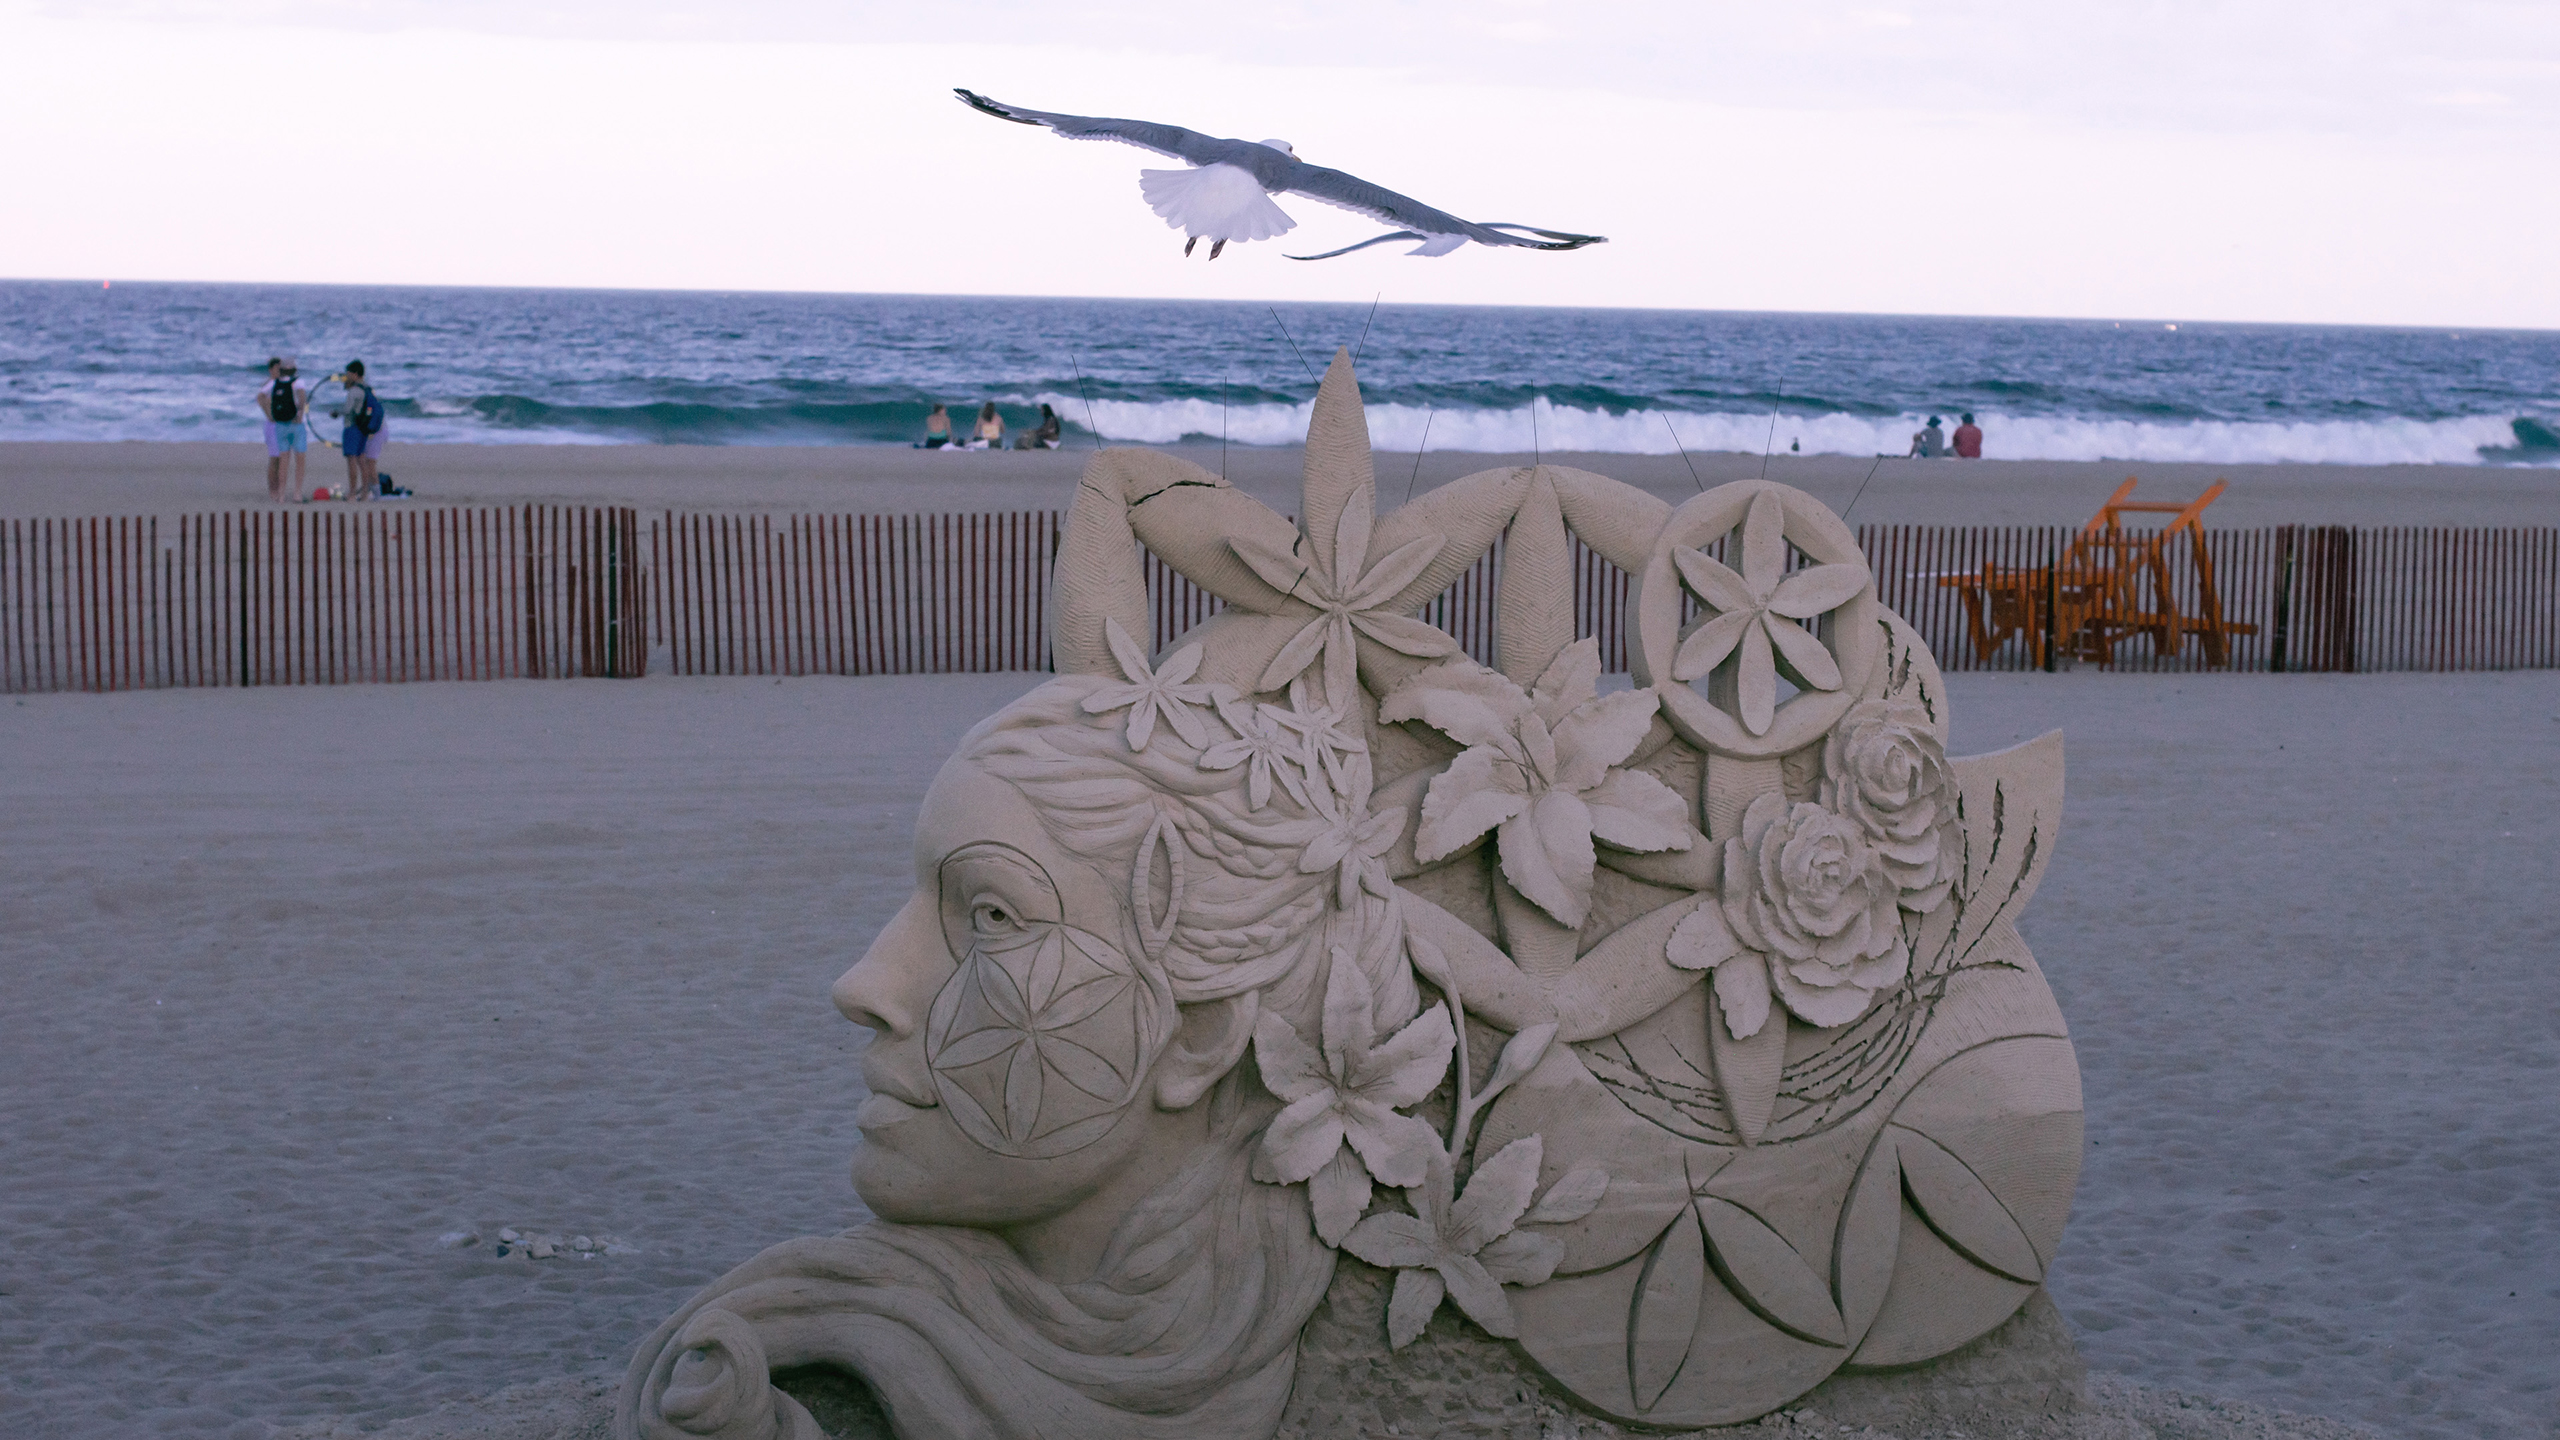 Sand Sculpture Beach Seagulls Sculpture Sea 2560x1440